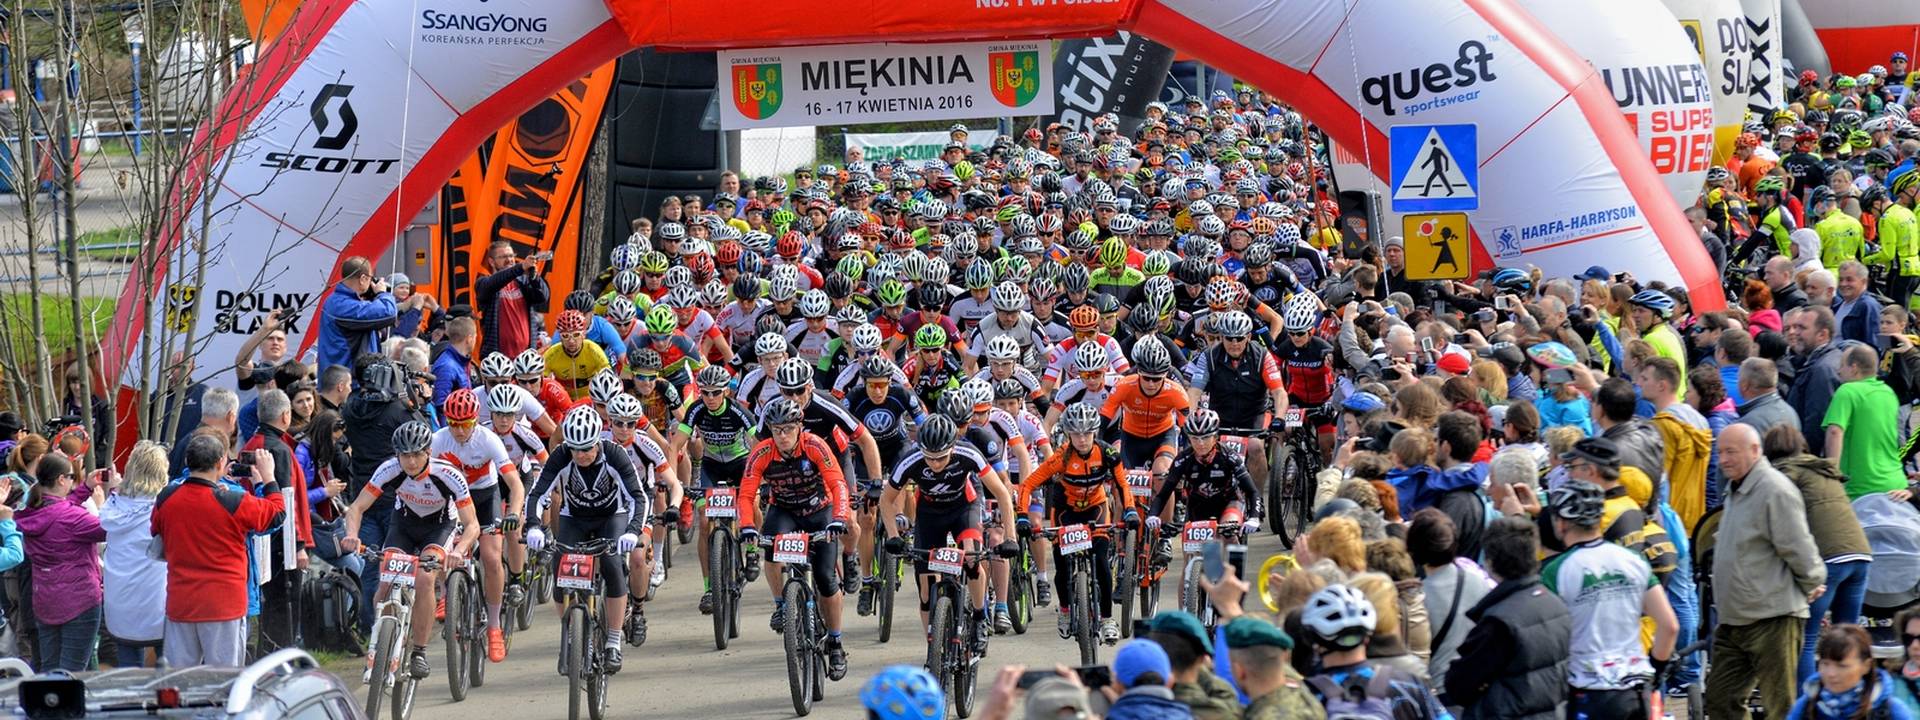 Inauguracja Bike Maratonu – 8 kwietnia, Miękinia. Ostatnie odliczanie